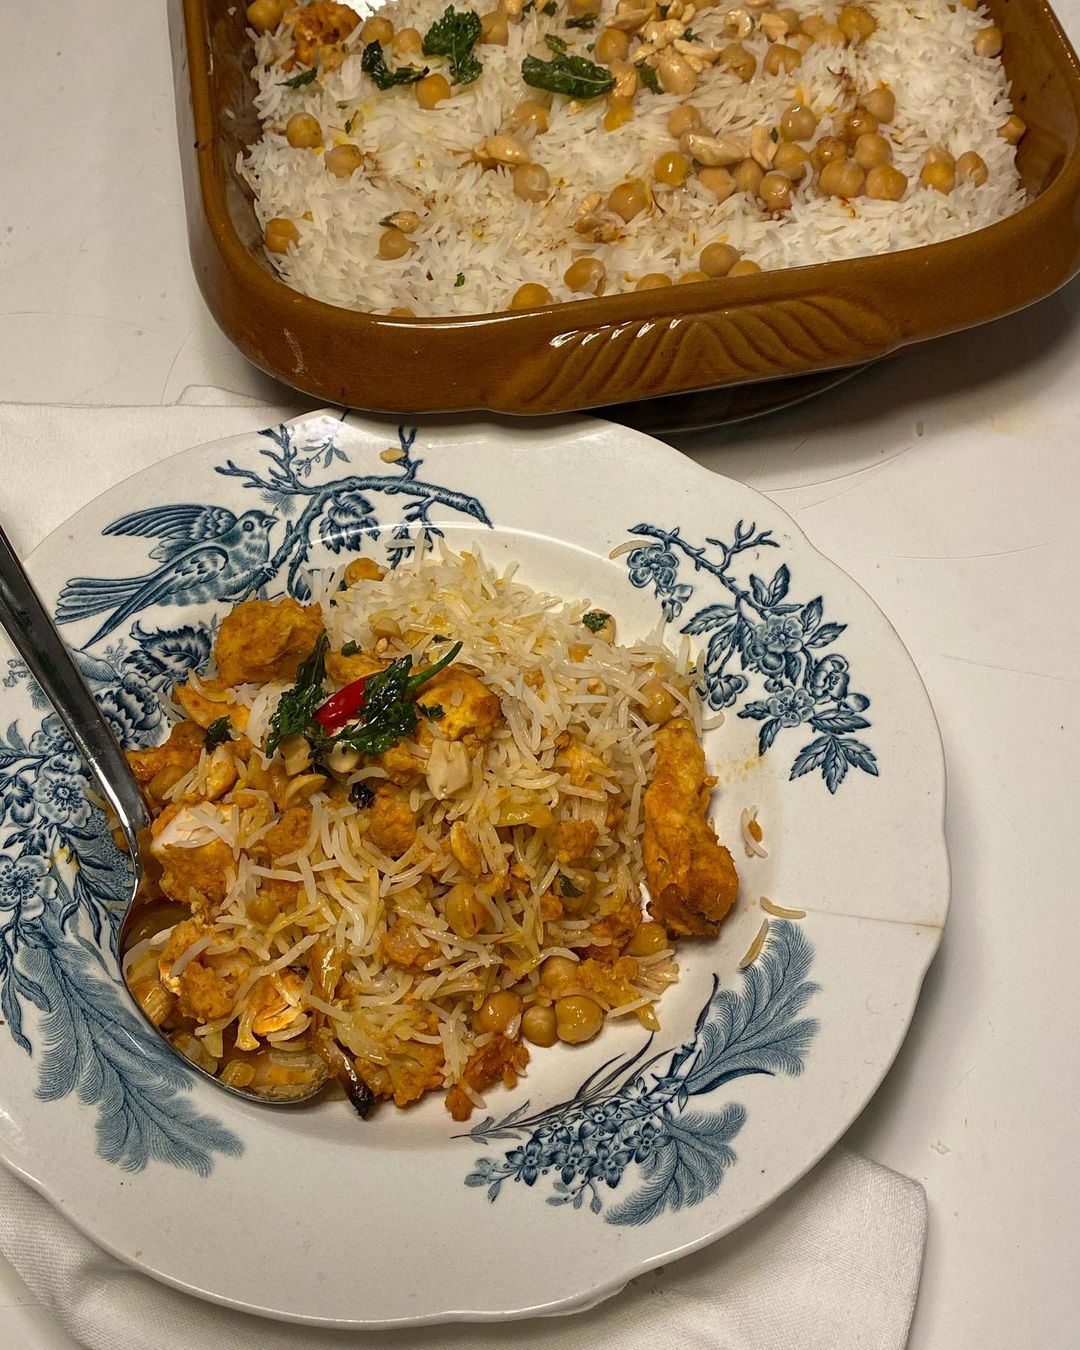 Tikka-masalakyckling med ris, smaksatt med kikärtor, saffran, smörstekta jordnötter och mynta